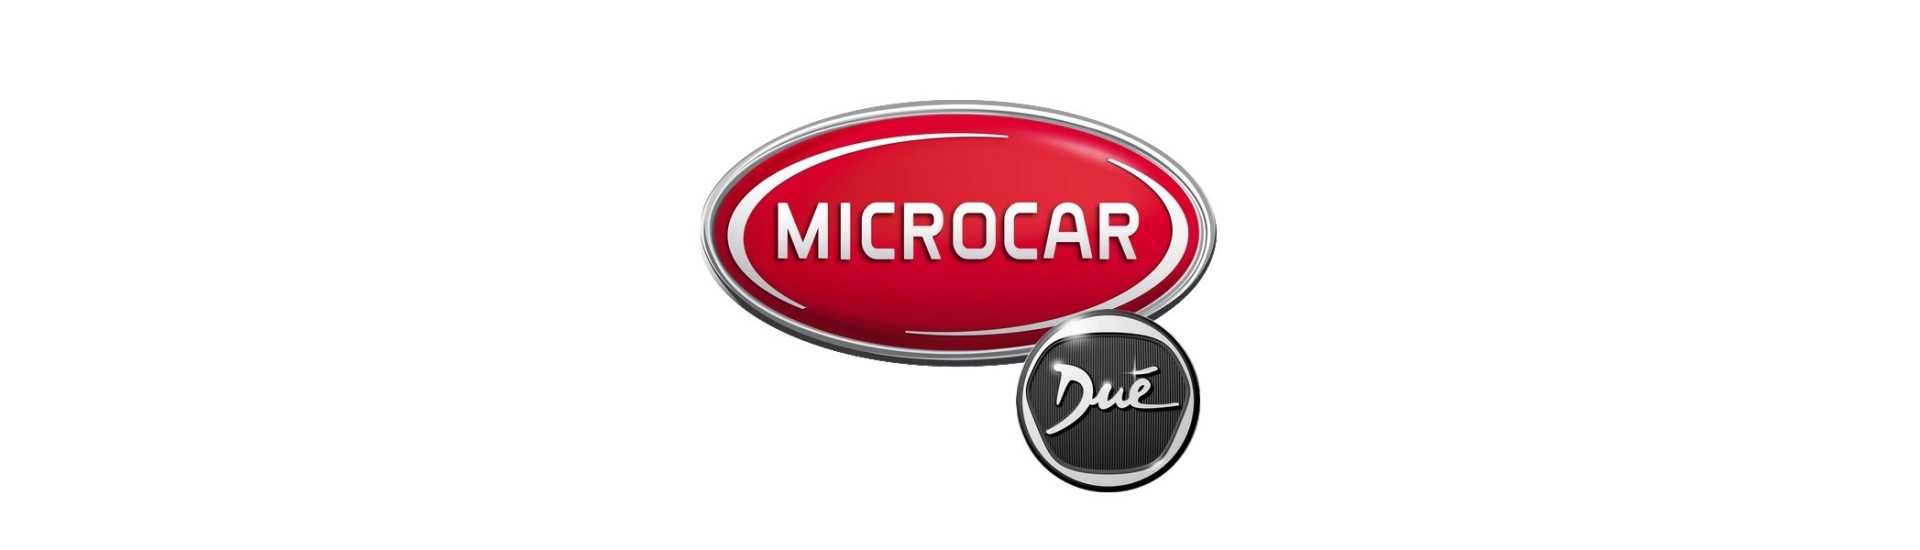 Vidrio custodial al mejor precio para coche sin permiso Microcar Dué